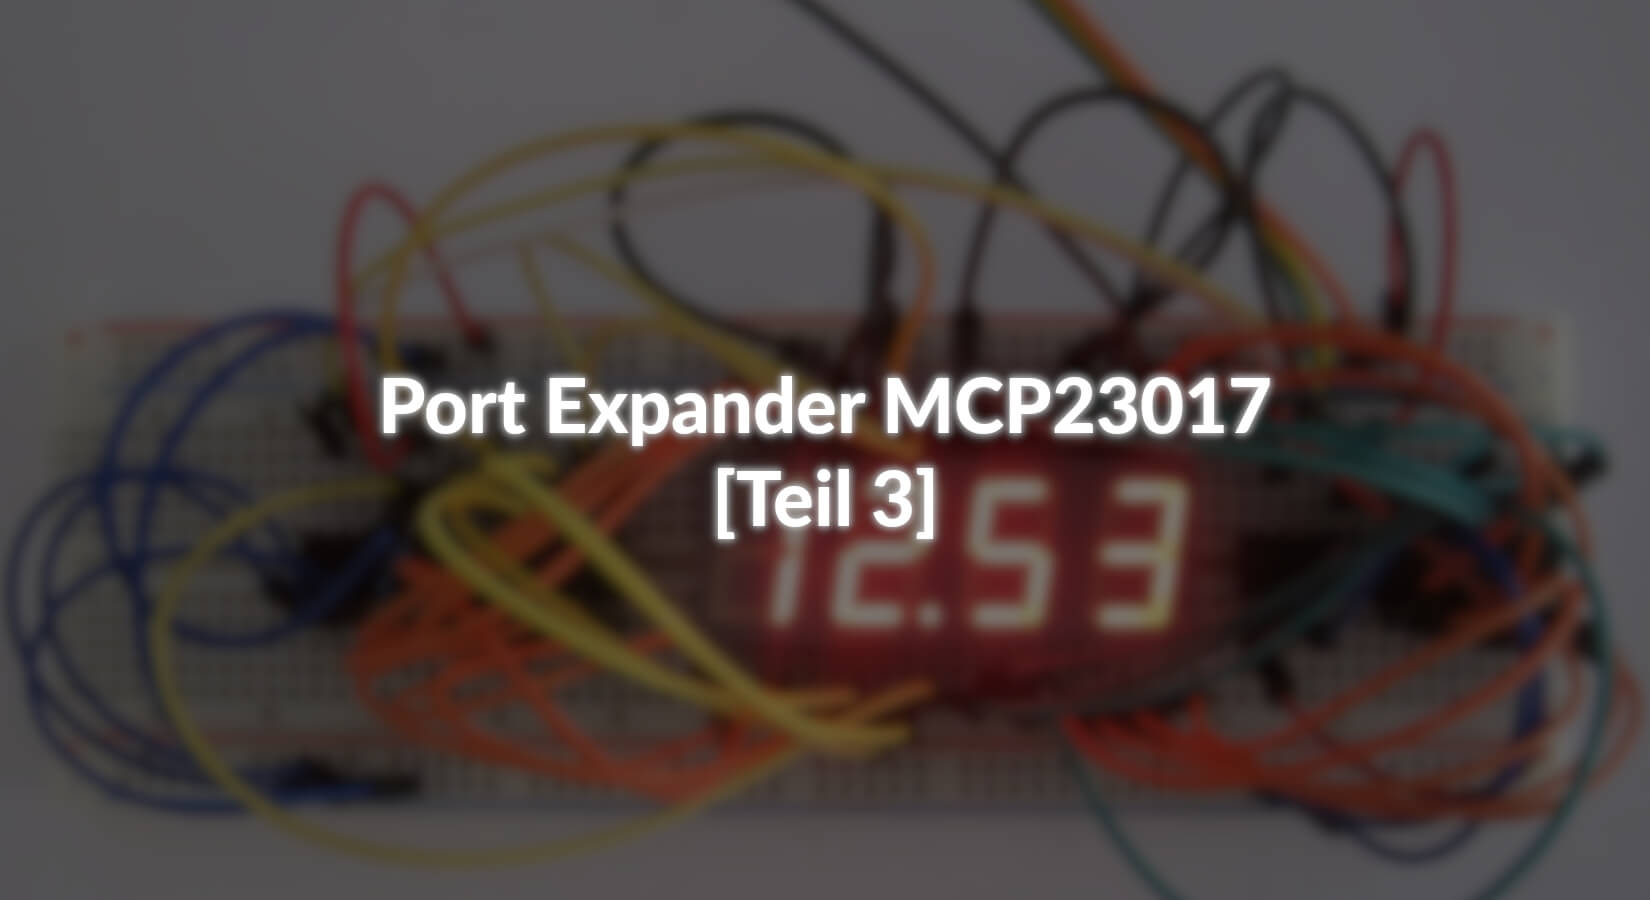 Port Expander MCP23017 - [Teil 3] - AZ-Delivery